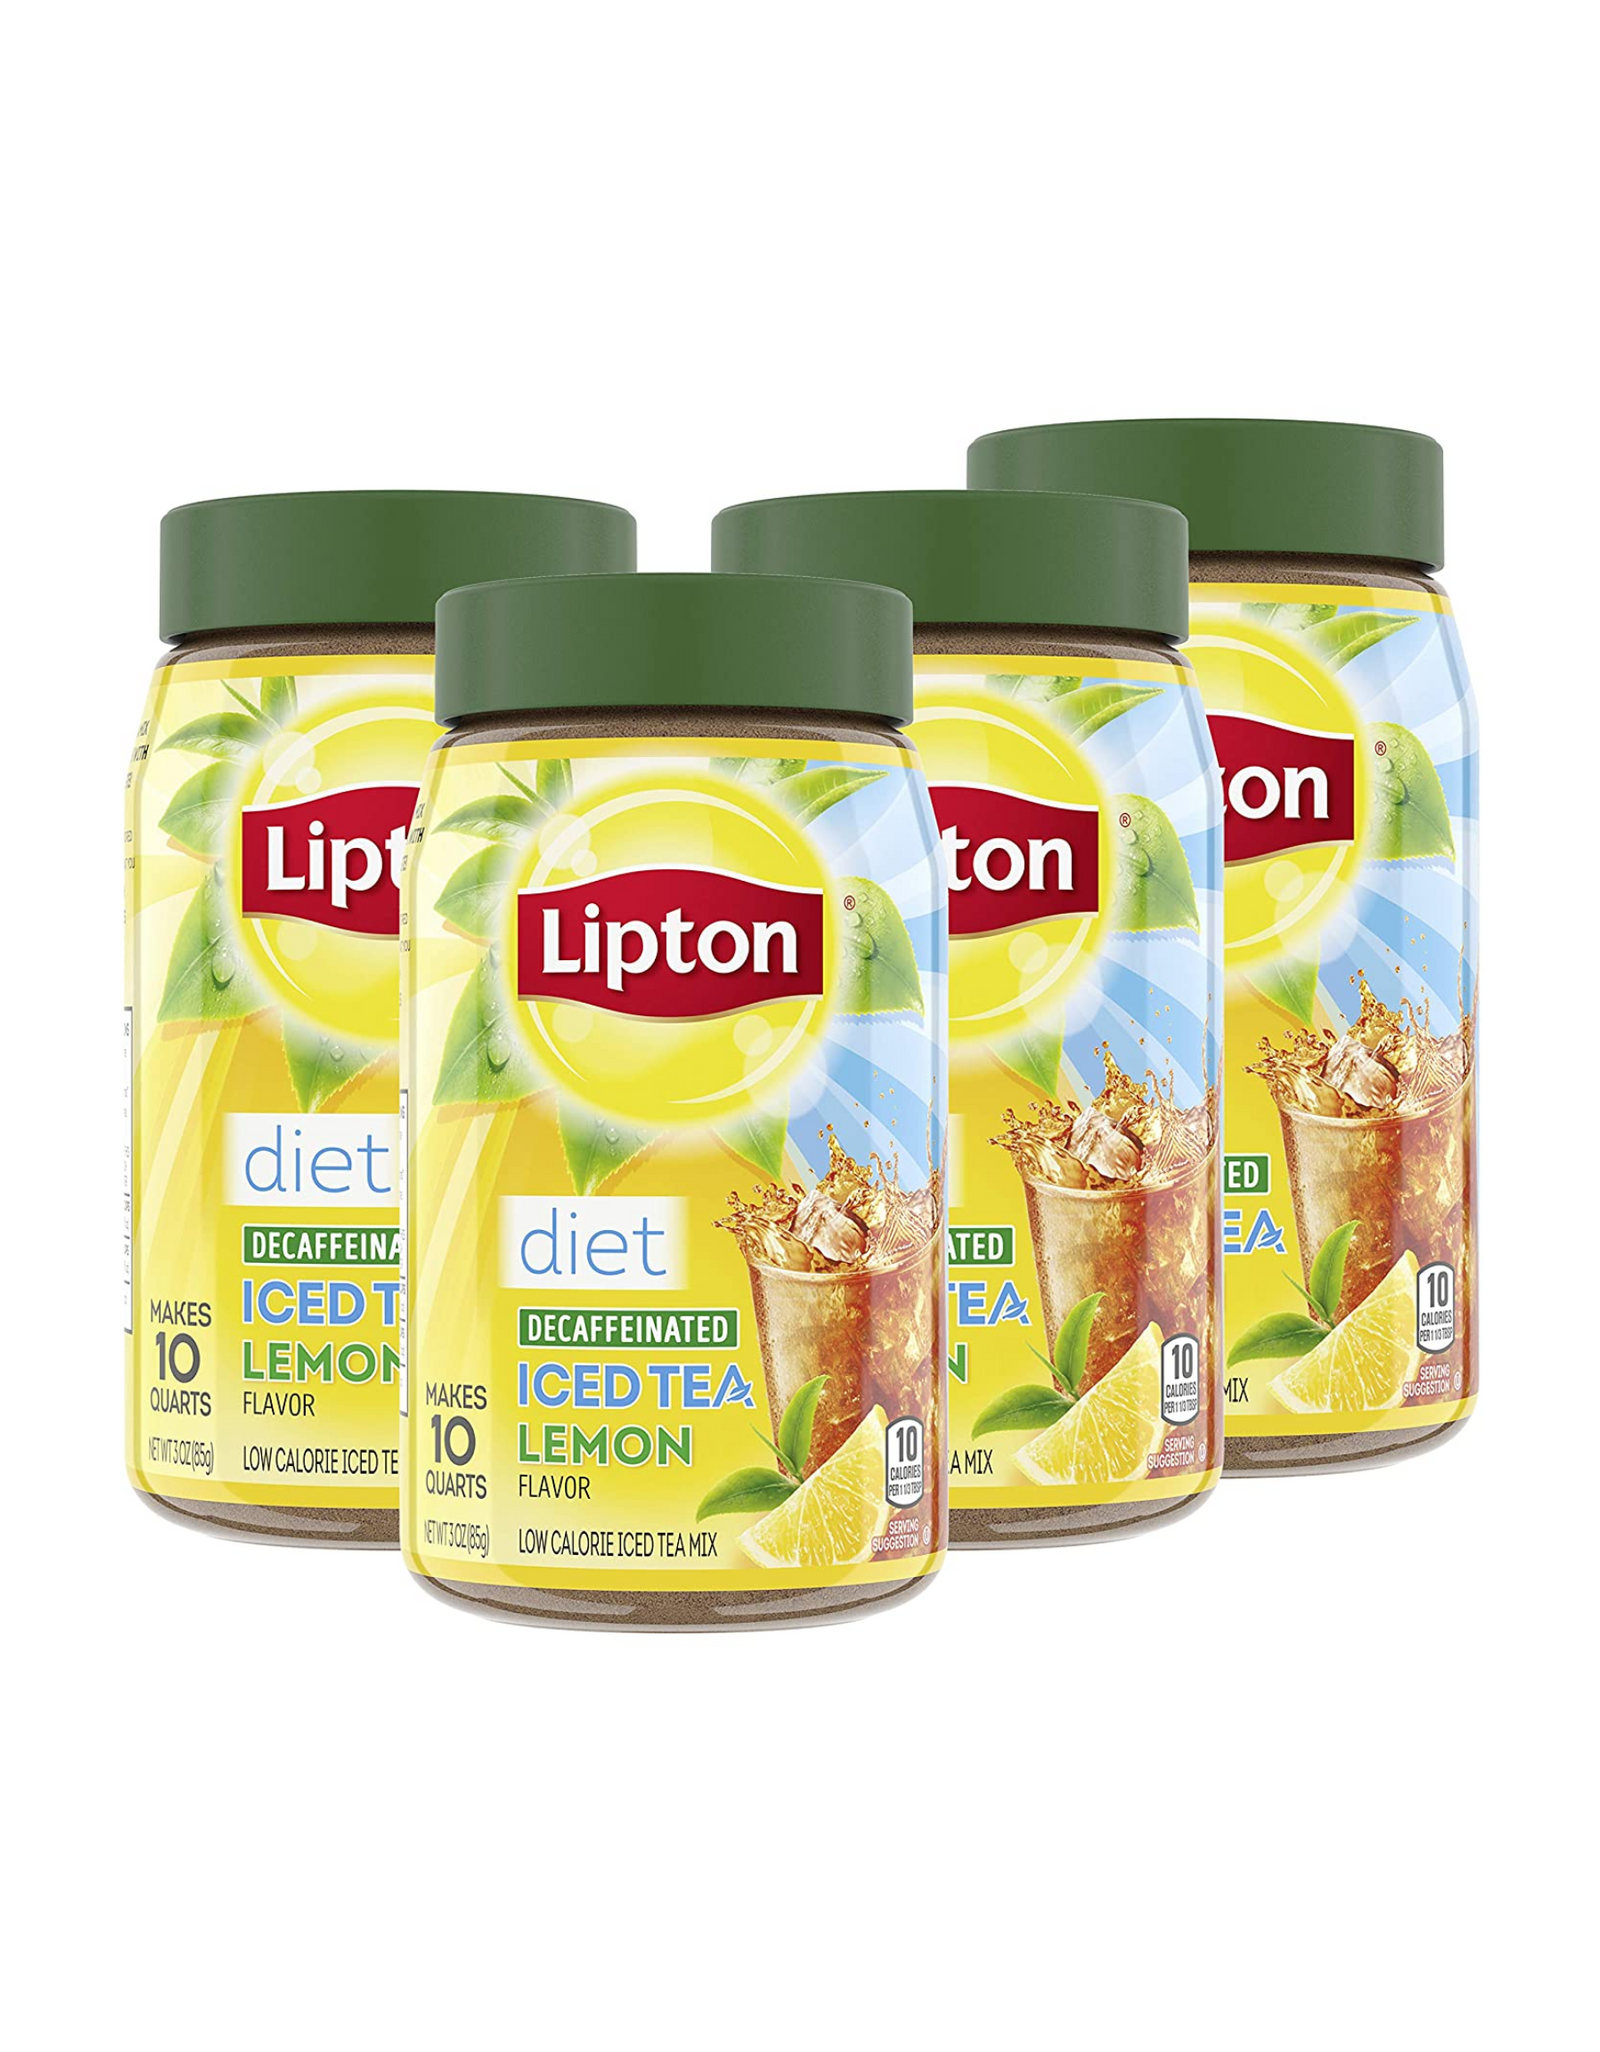 Lipton Diet Iced Tea Mix, Decaf Iced Tea Lemon, Makes 10 Quarts (Pack of 4)